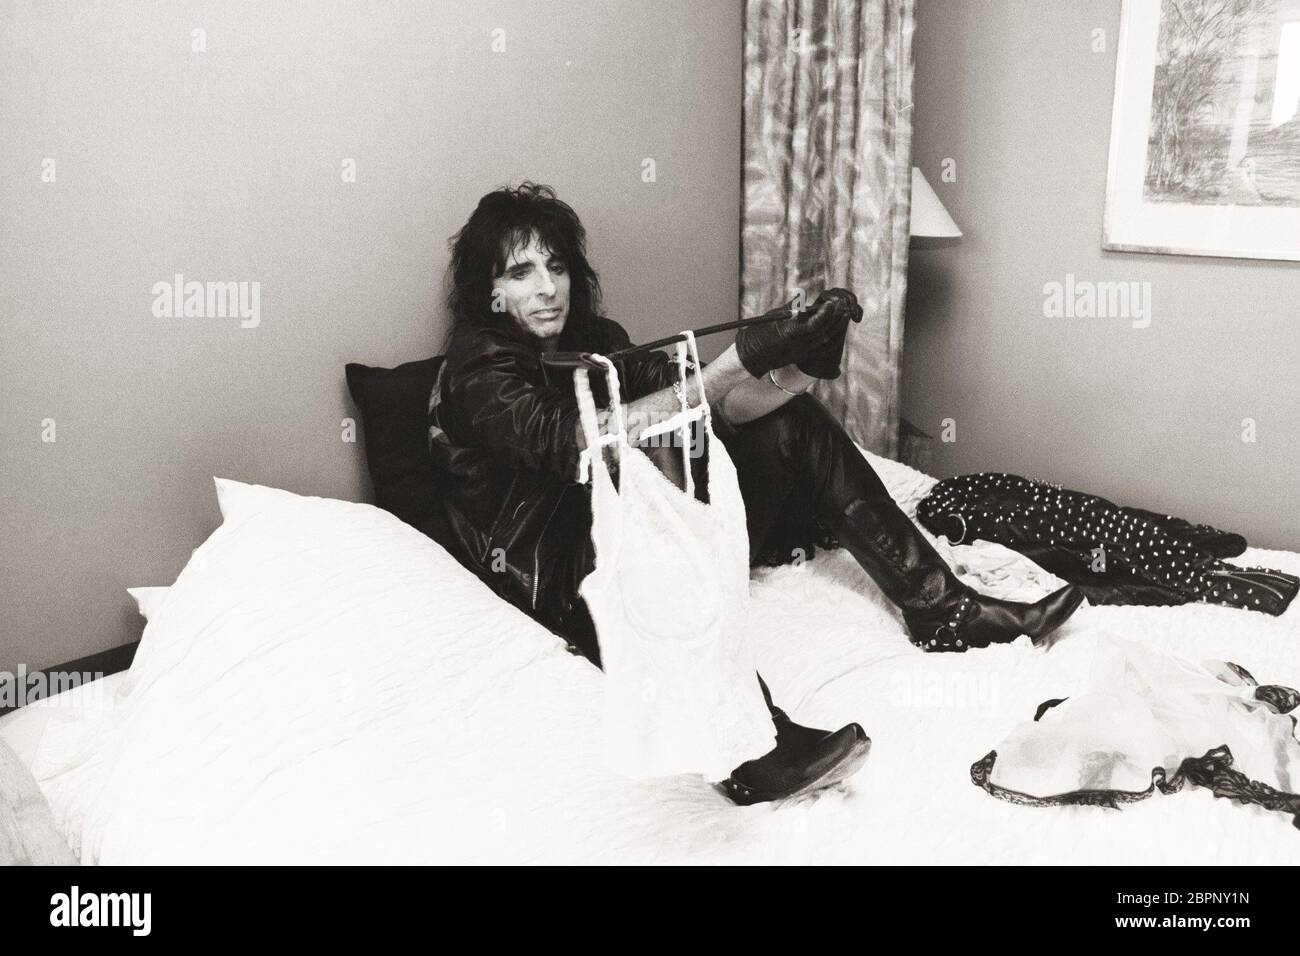 Alice Cooper - Der US-amerikanische Rockmusiker Alice Cooper Foto Stock